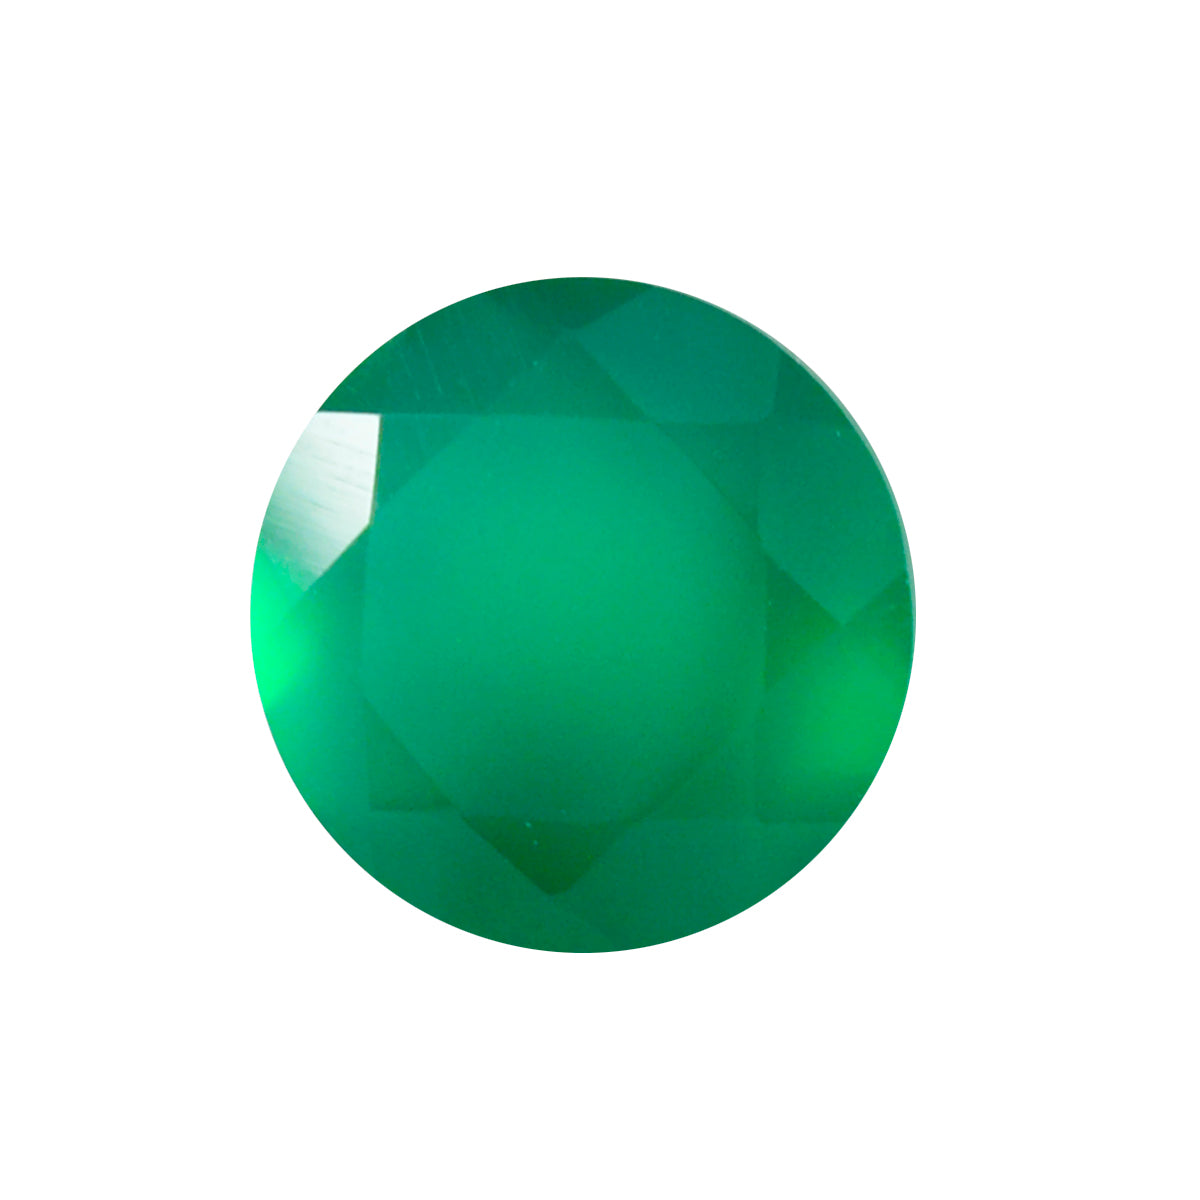 Riyogems 1 Stück natürlicher grüner Onyx, facettiert, 8 x 8 mm, runde Form, wunderschöner Qualitätsedelstein